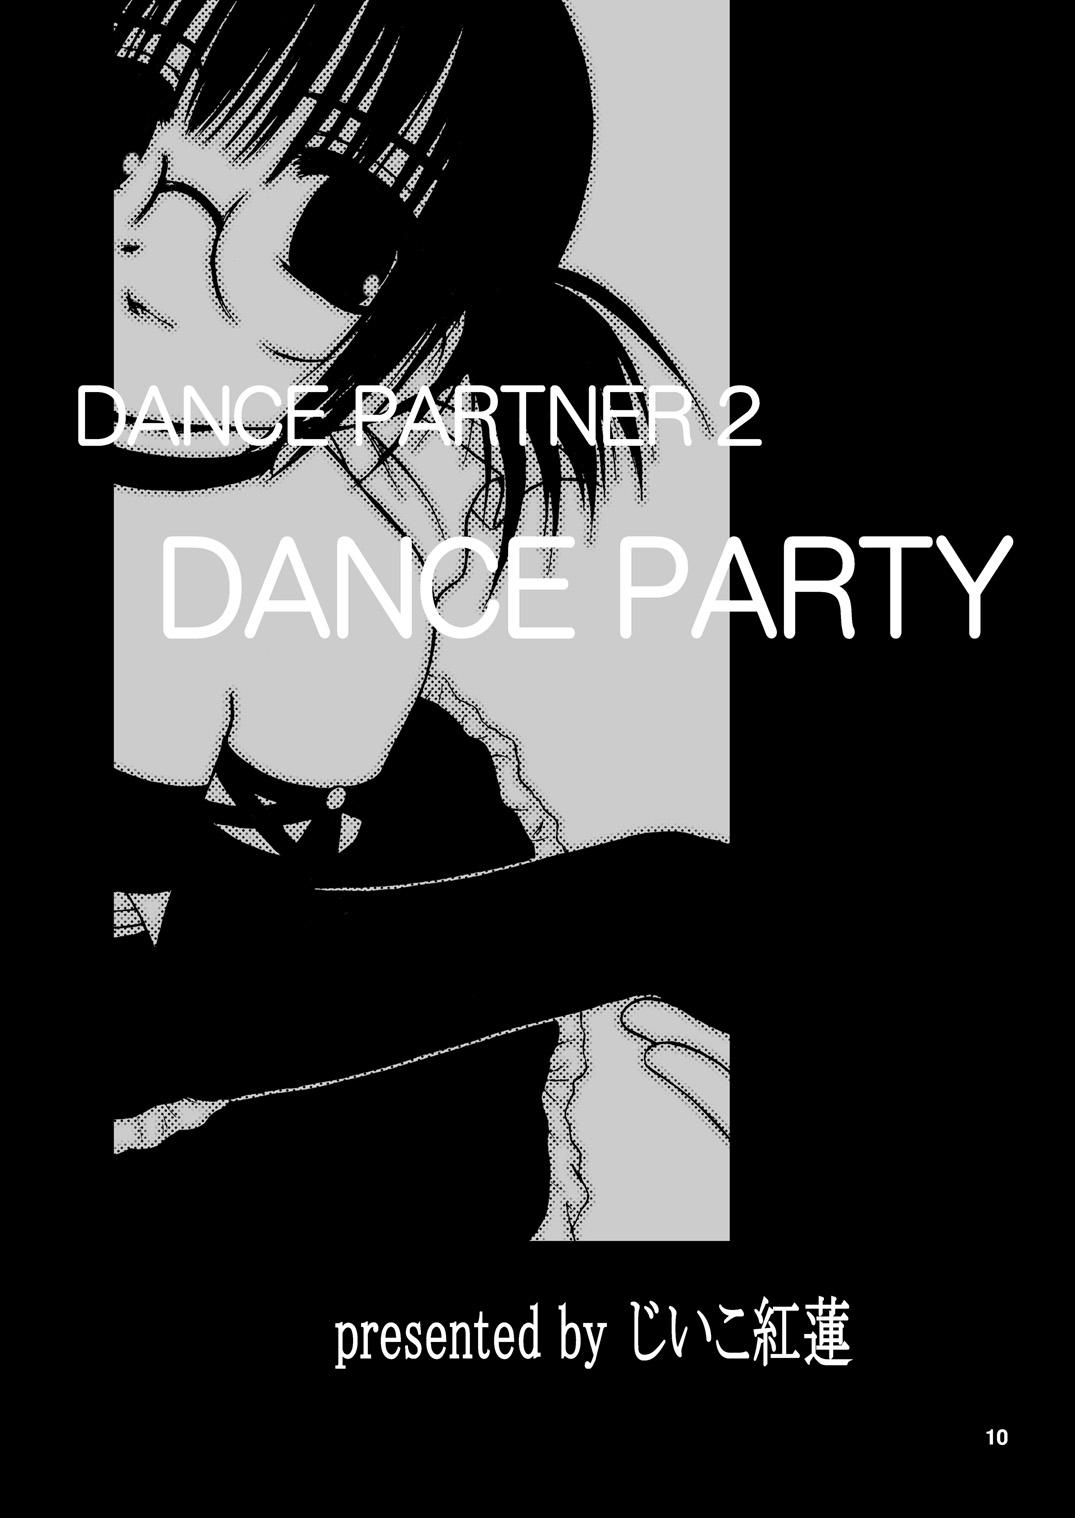 Dance Partner 2 DANCE PARTY 8